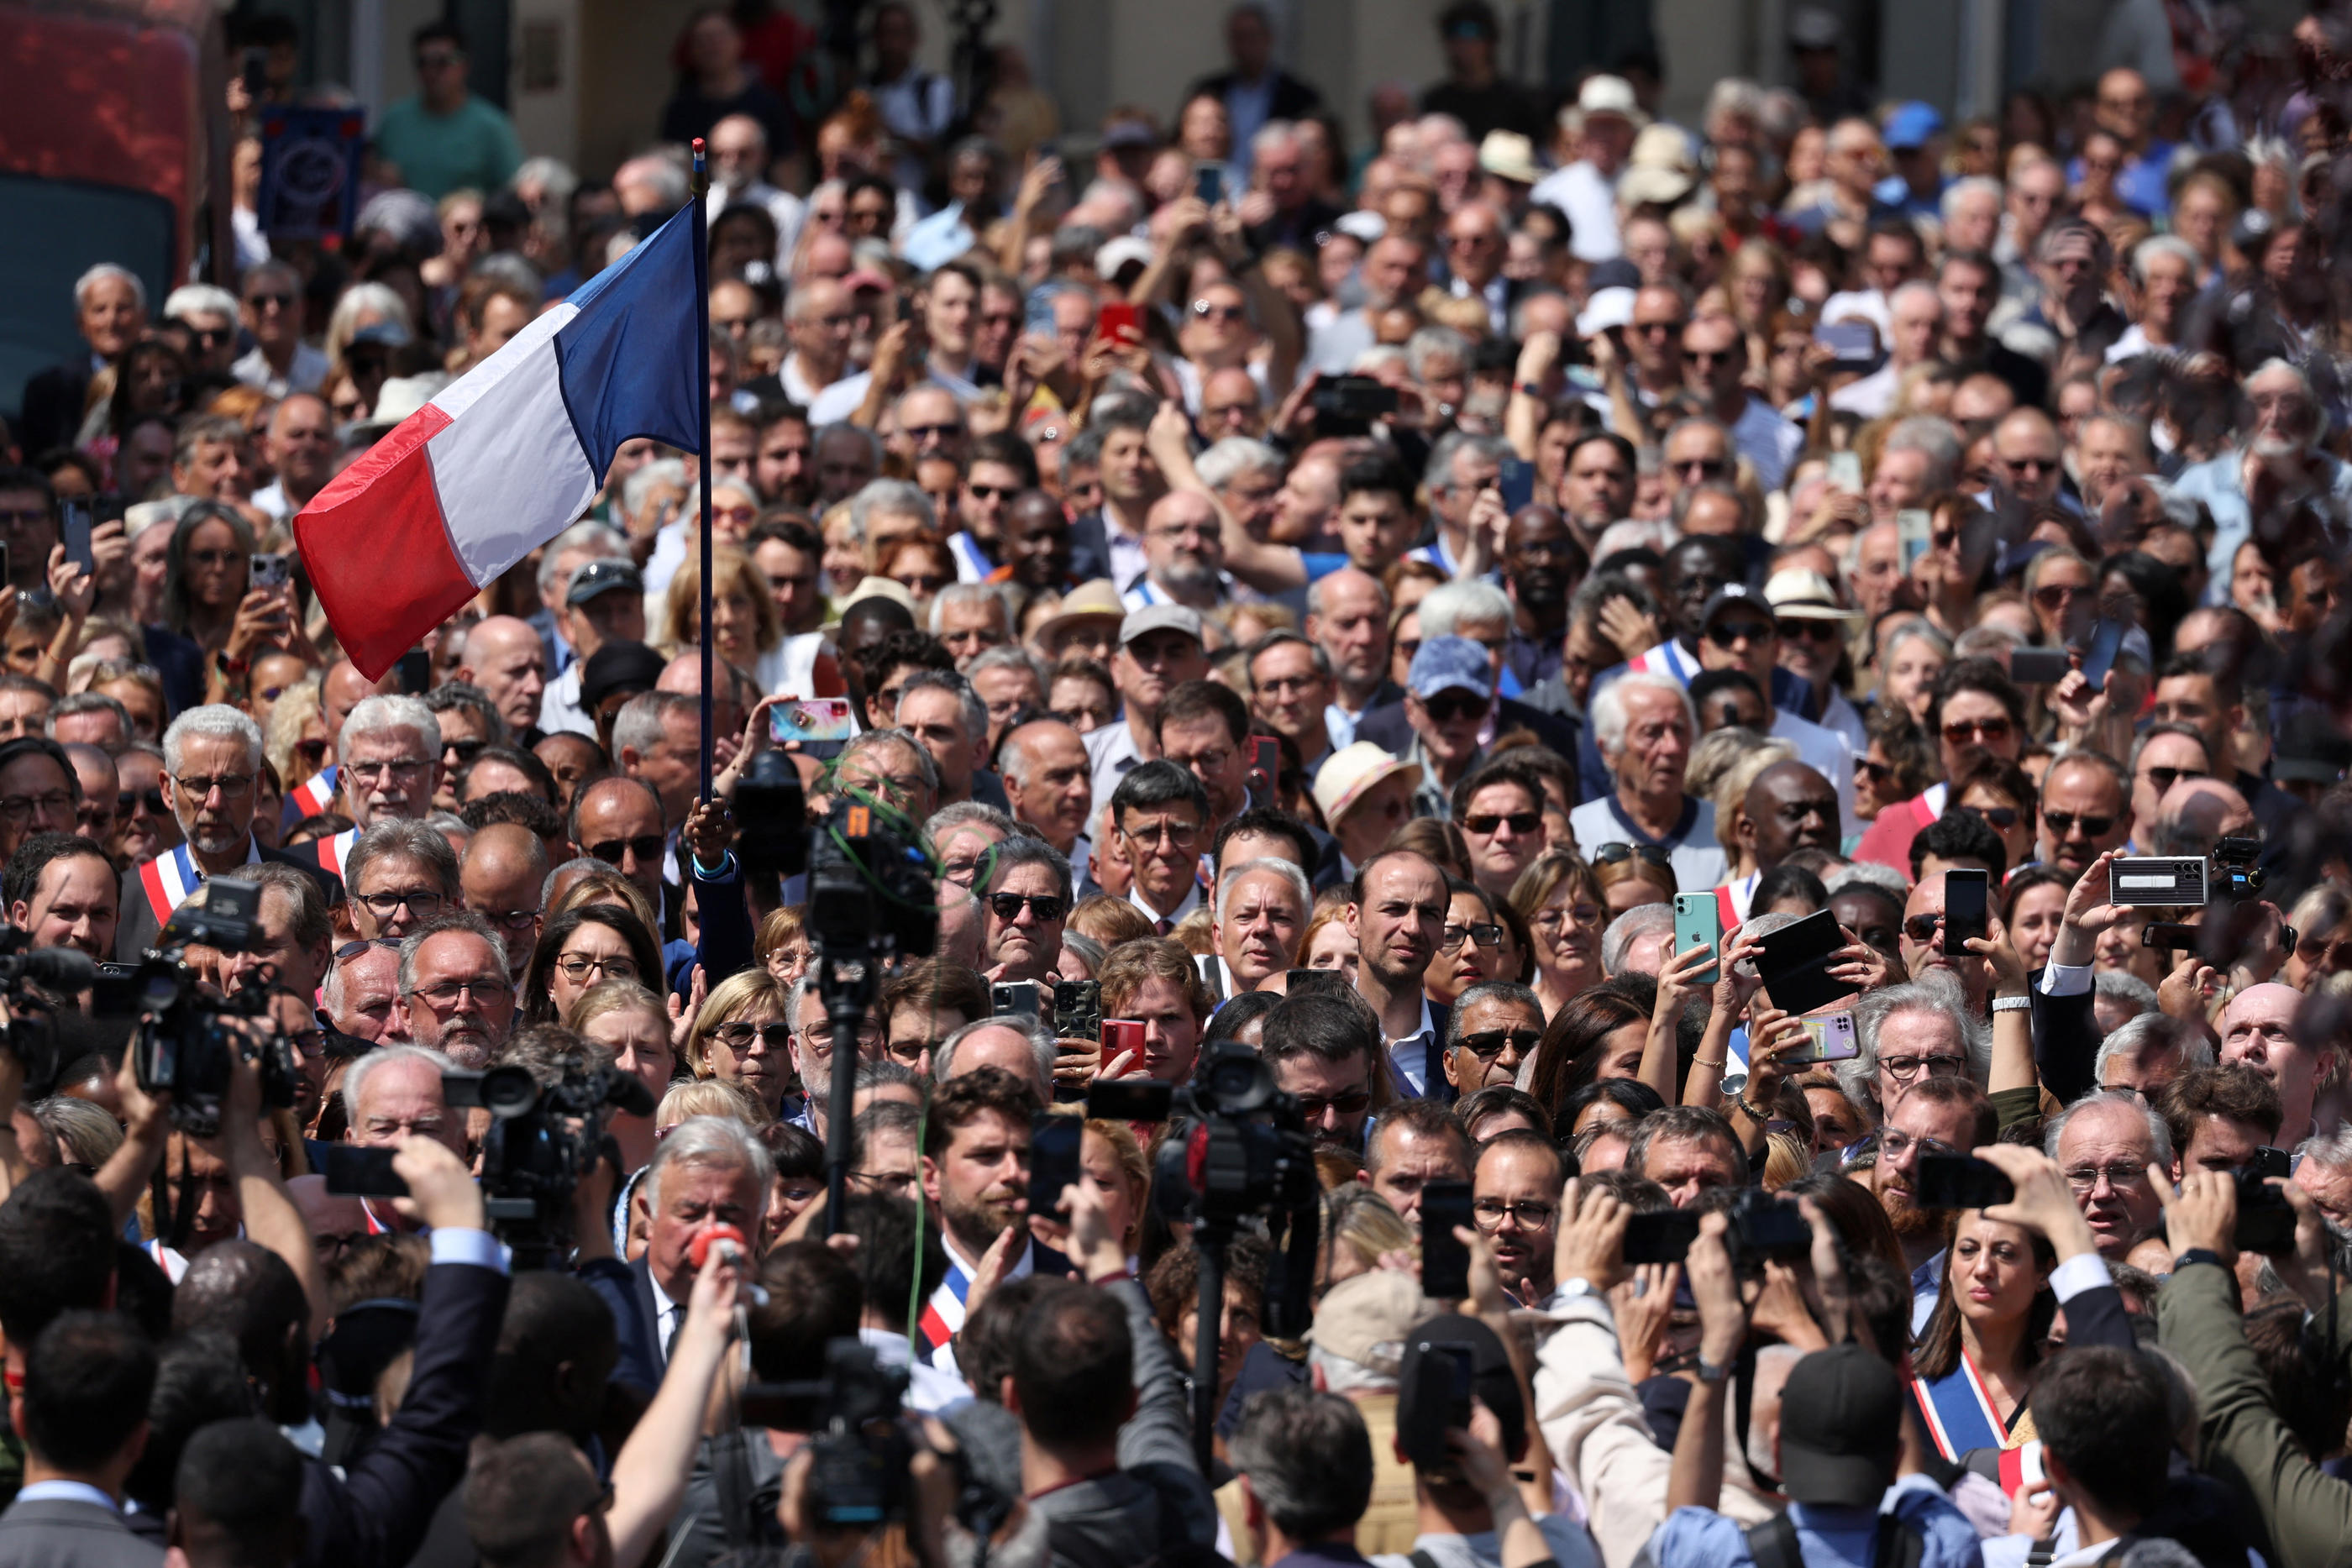 La foule a chaudement applaudi le maire Vincent Jeanbrun, ce lundi à L’Haÿ-les-Roses, épaulé par de nombreux élus et responsables politiques de LR mais aussi d'autres couleurs politiques. Reuters/Stéphanie Lecocq